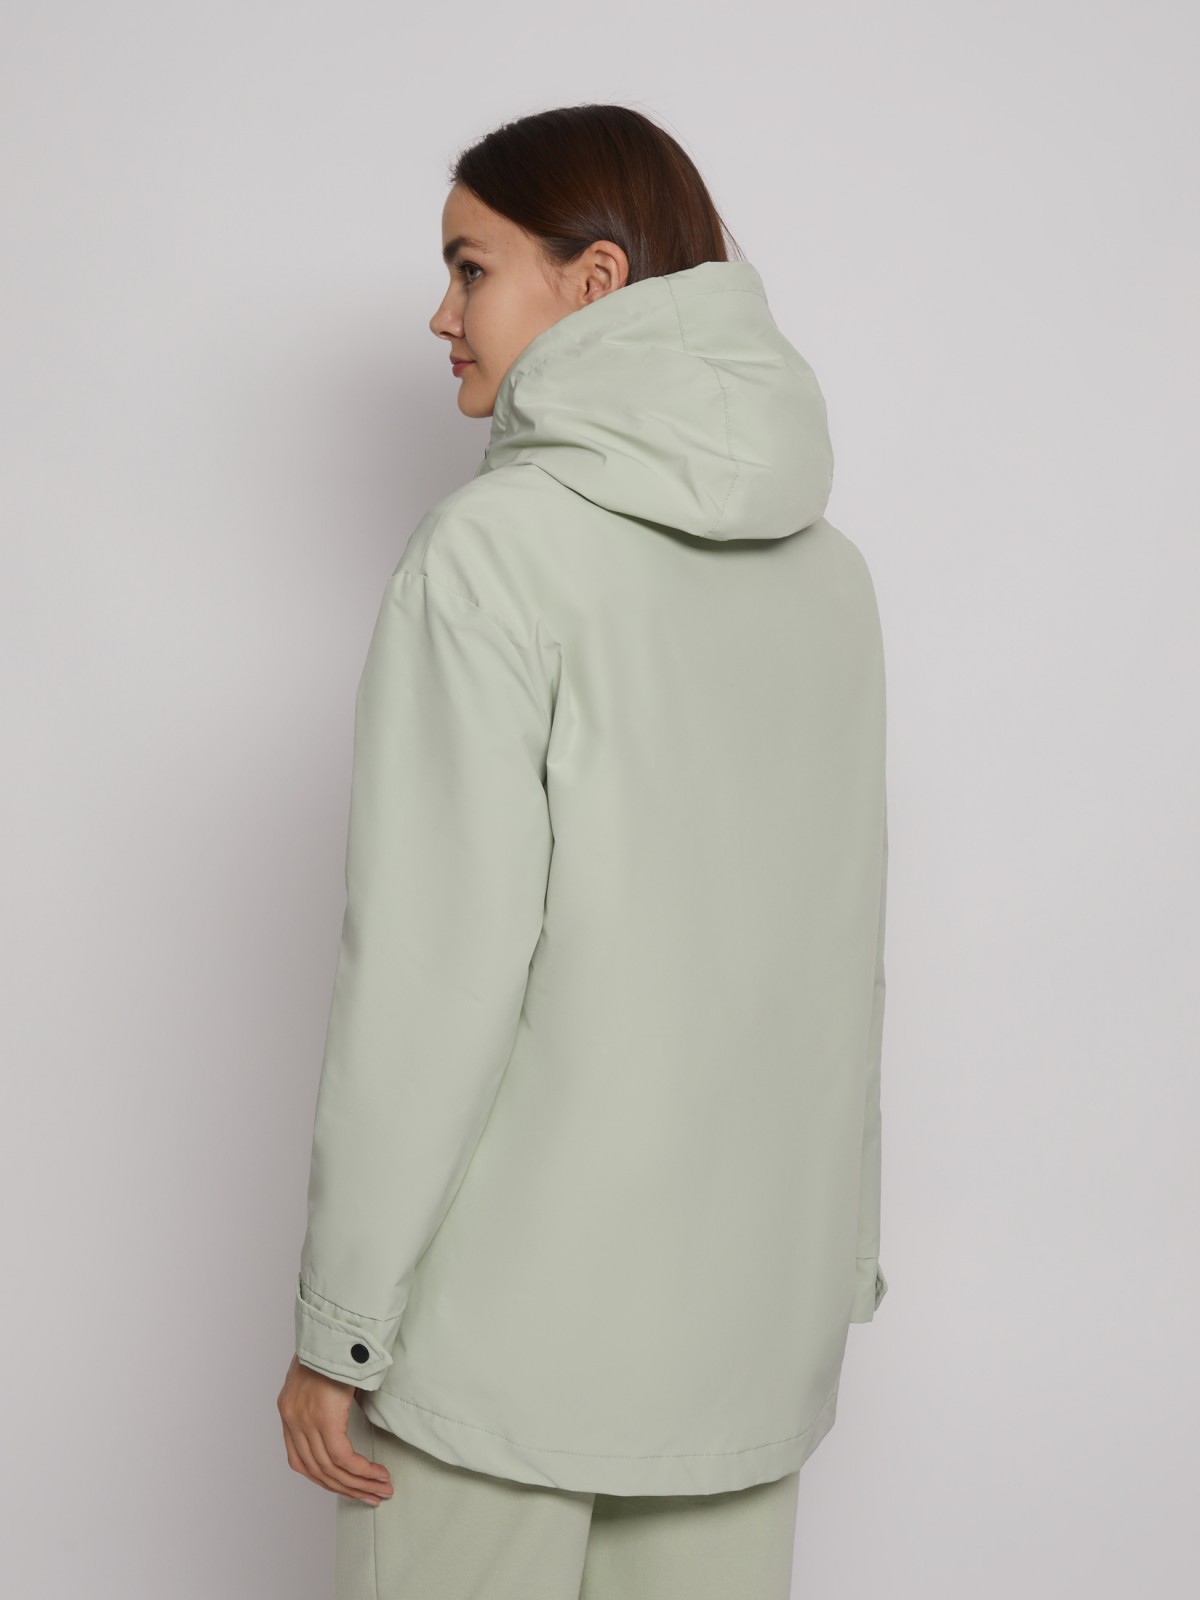 Куртка-ветровка с капюшоном zolla 02221562J014, цвет светло-зеленый, размер XS - фото 6